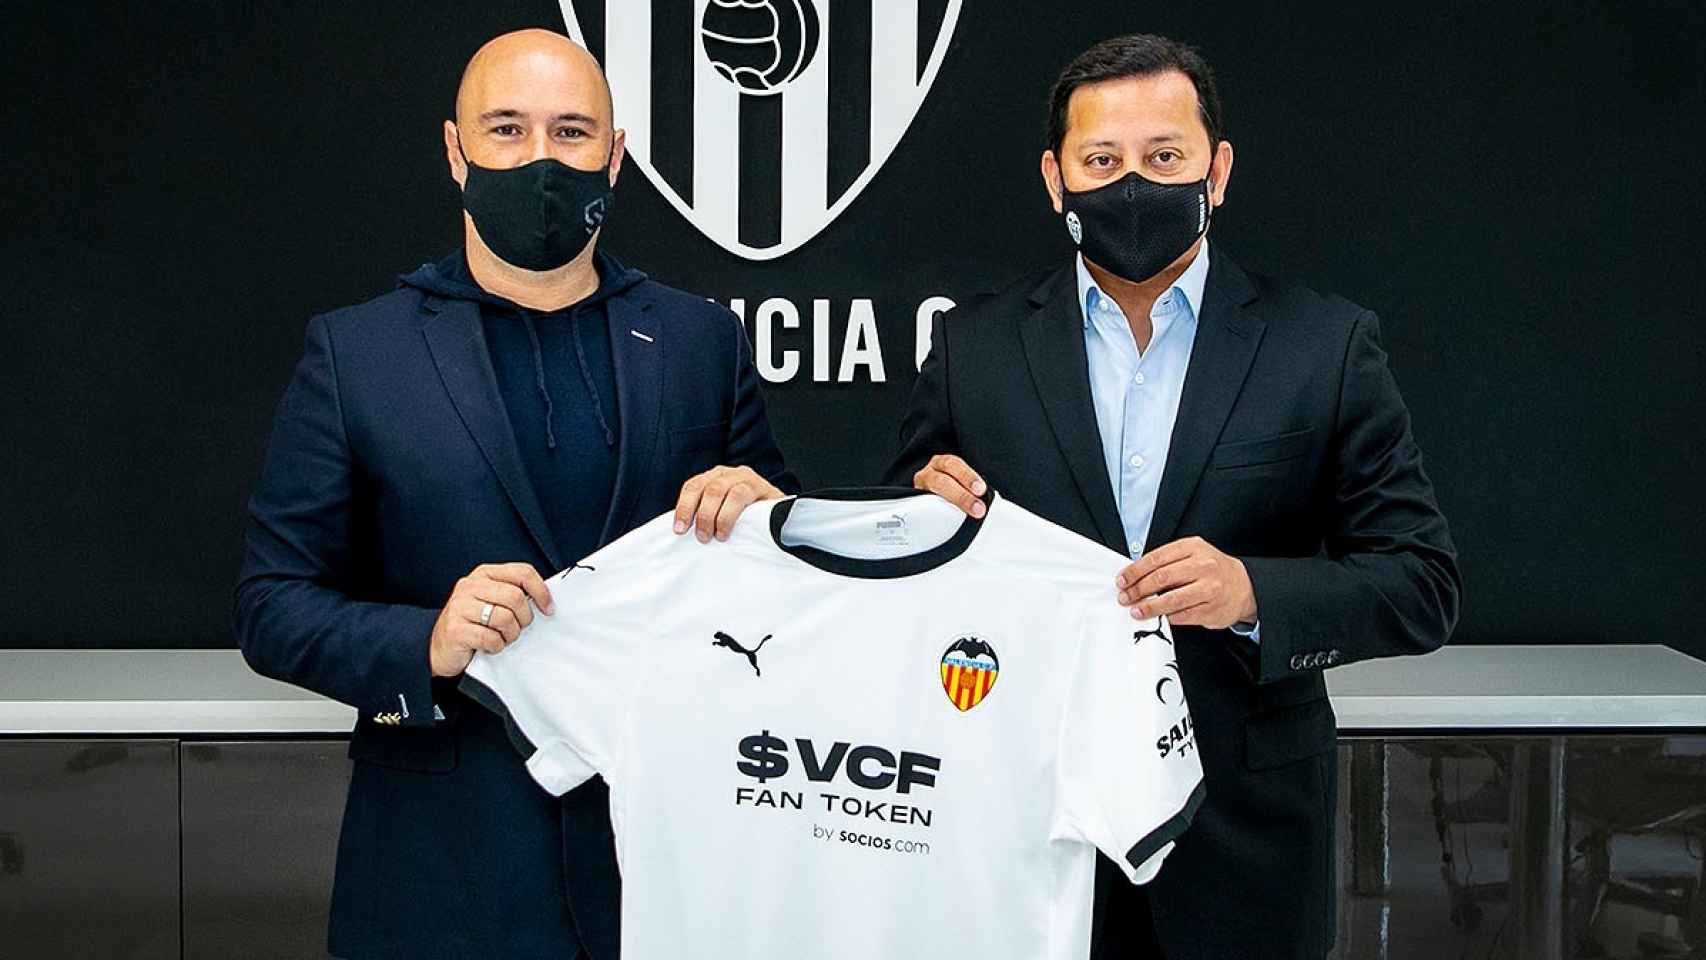 El Valencia anuncia su propia criptomoneda